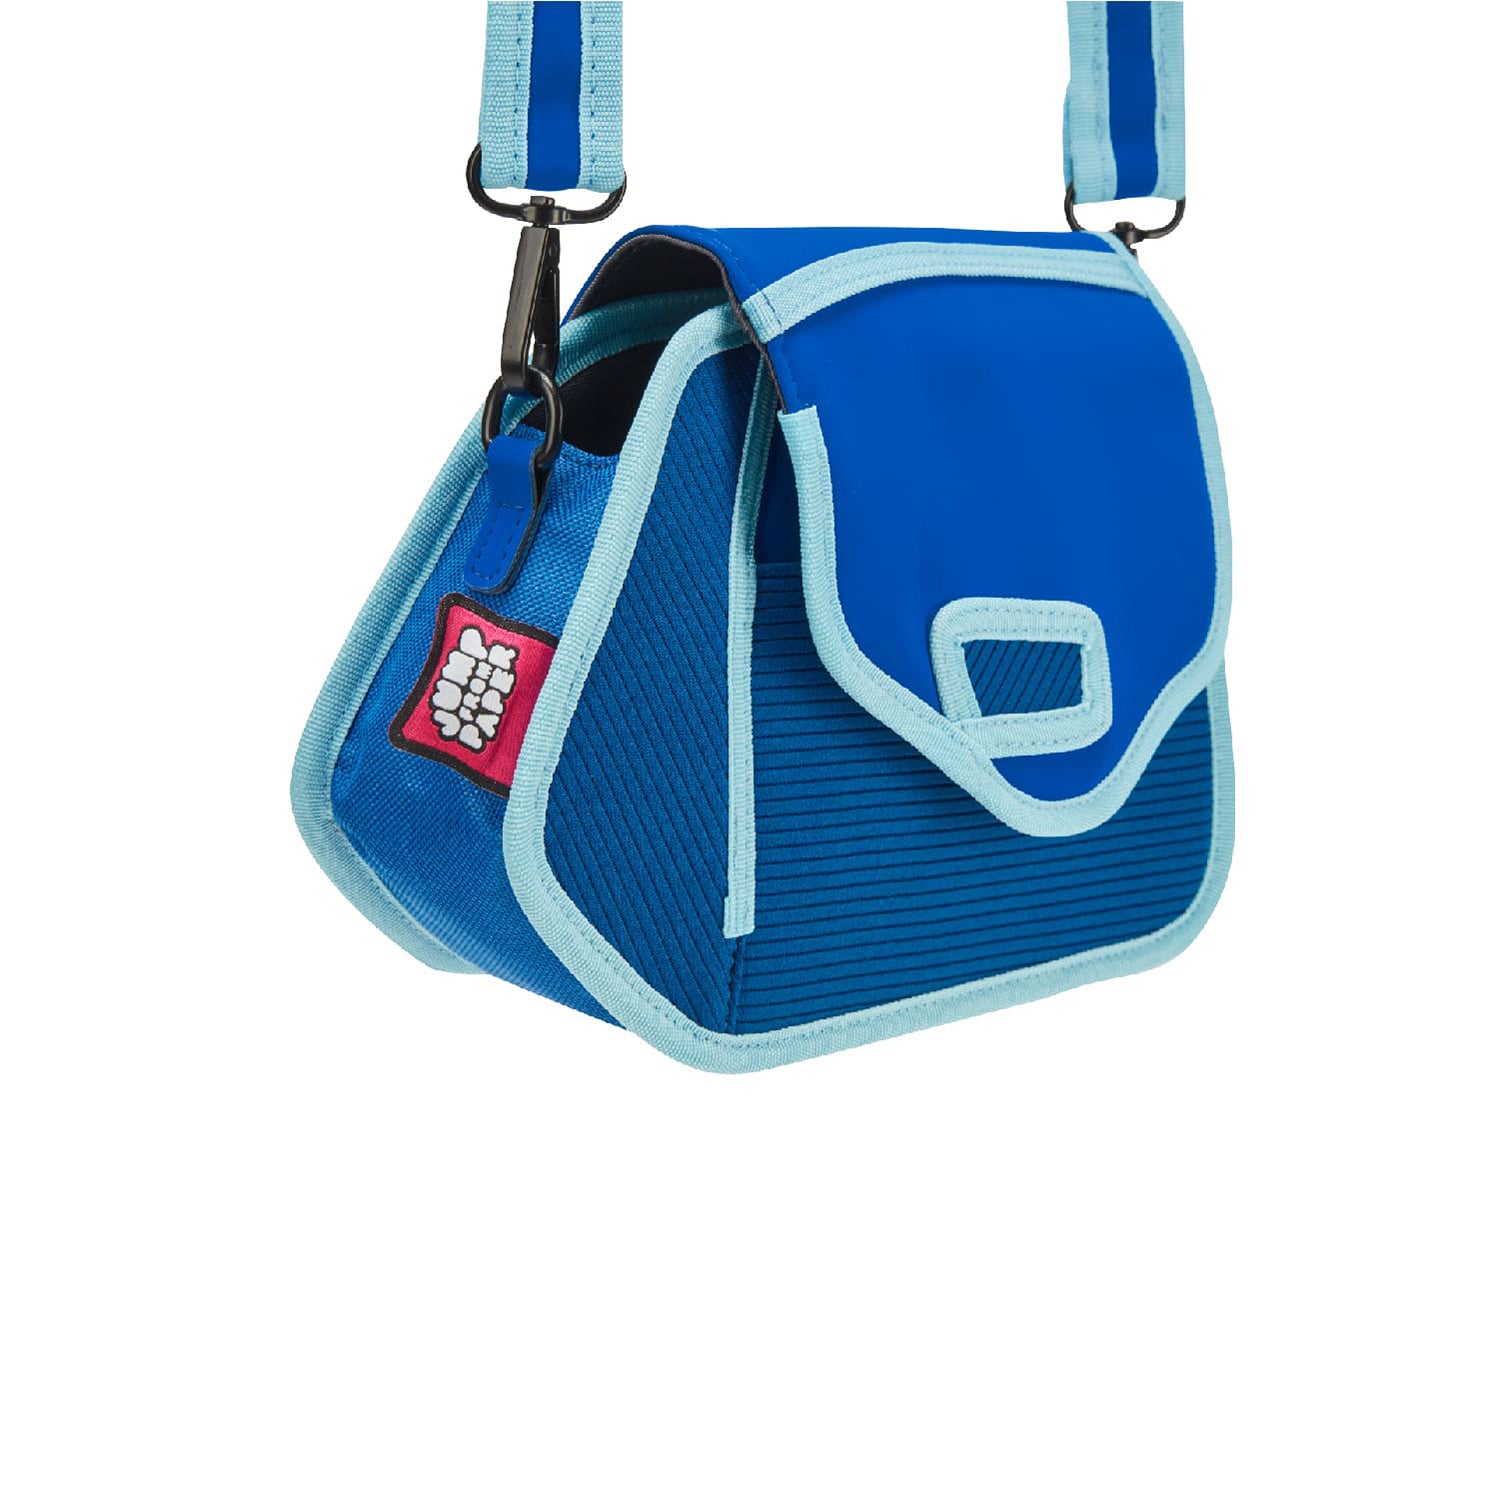 Aqua Sky Blue Clicky Shoulder Bag - JumpFromPaper